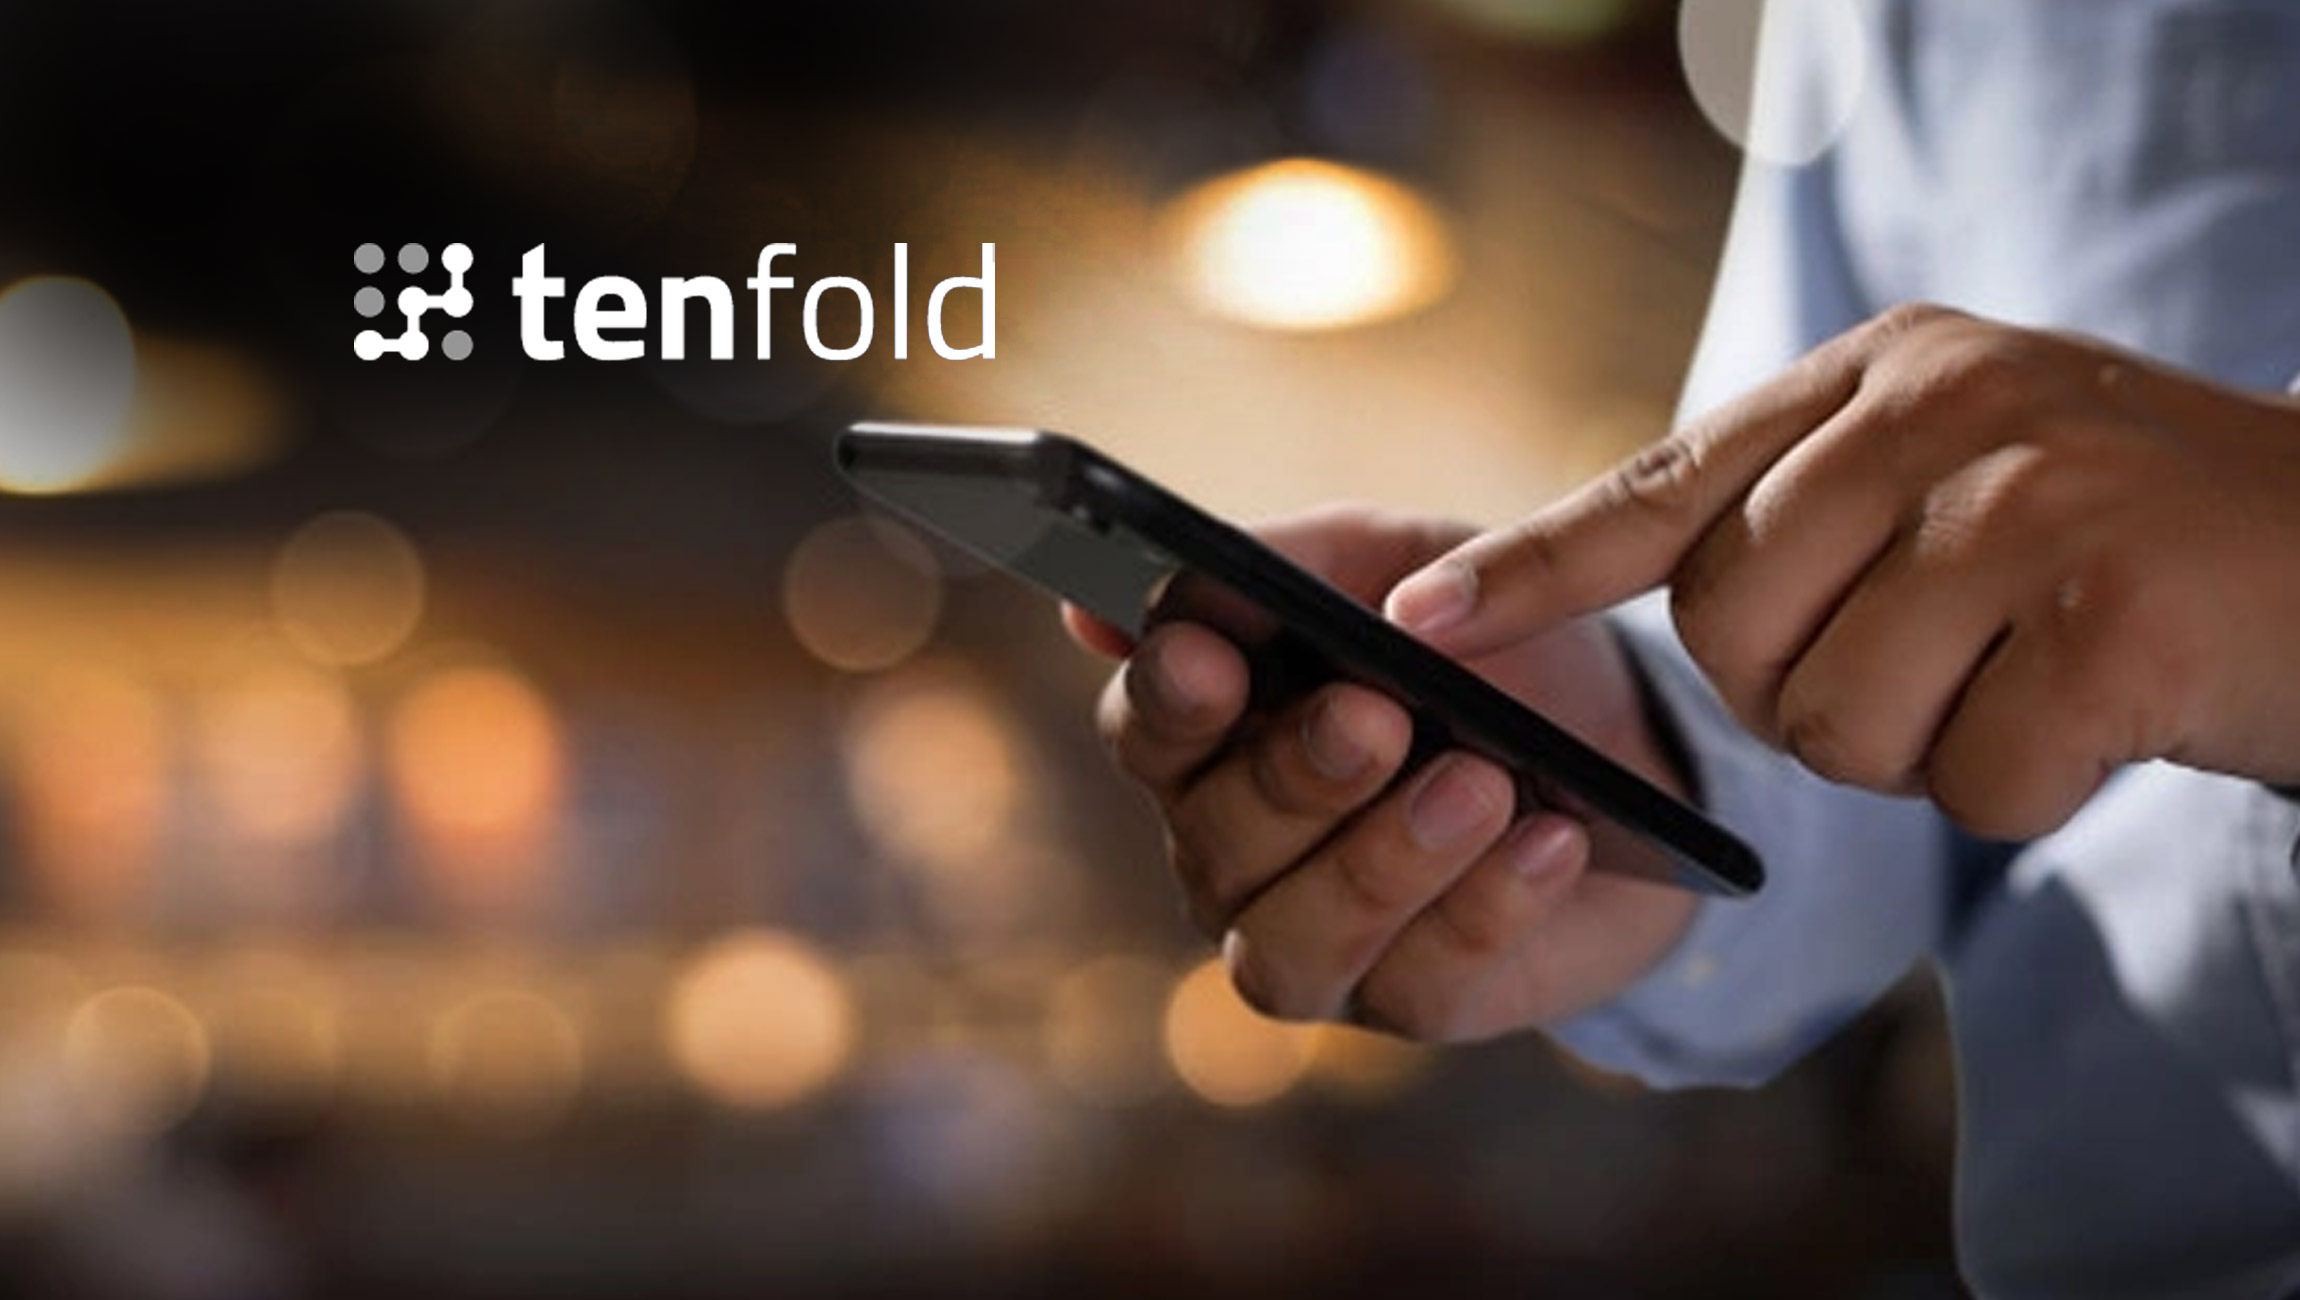 Tenfold Announces Tenfold NextGen CTI for Service Cloud Voice on Salesforce AppExchange, the World's Leading Enterprise Cloud Marketplace